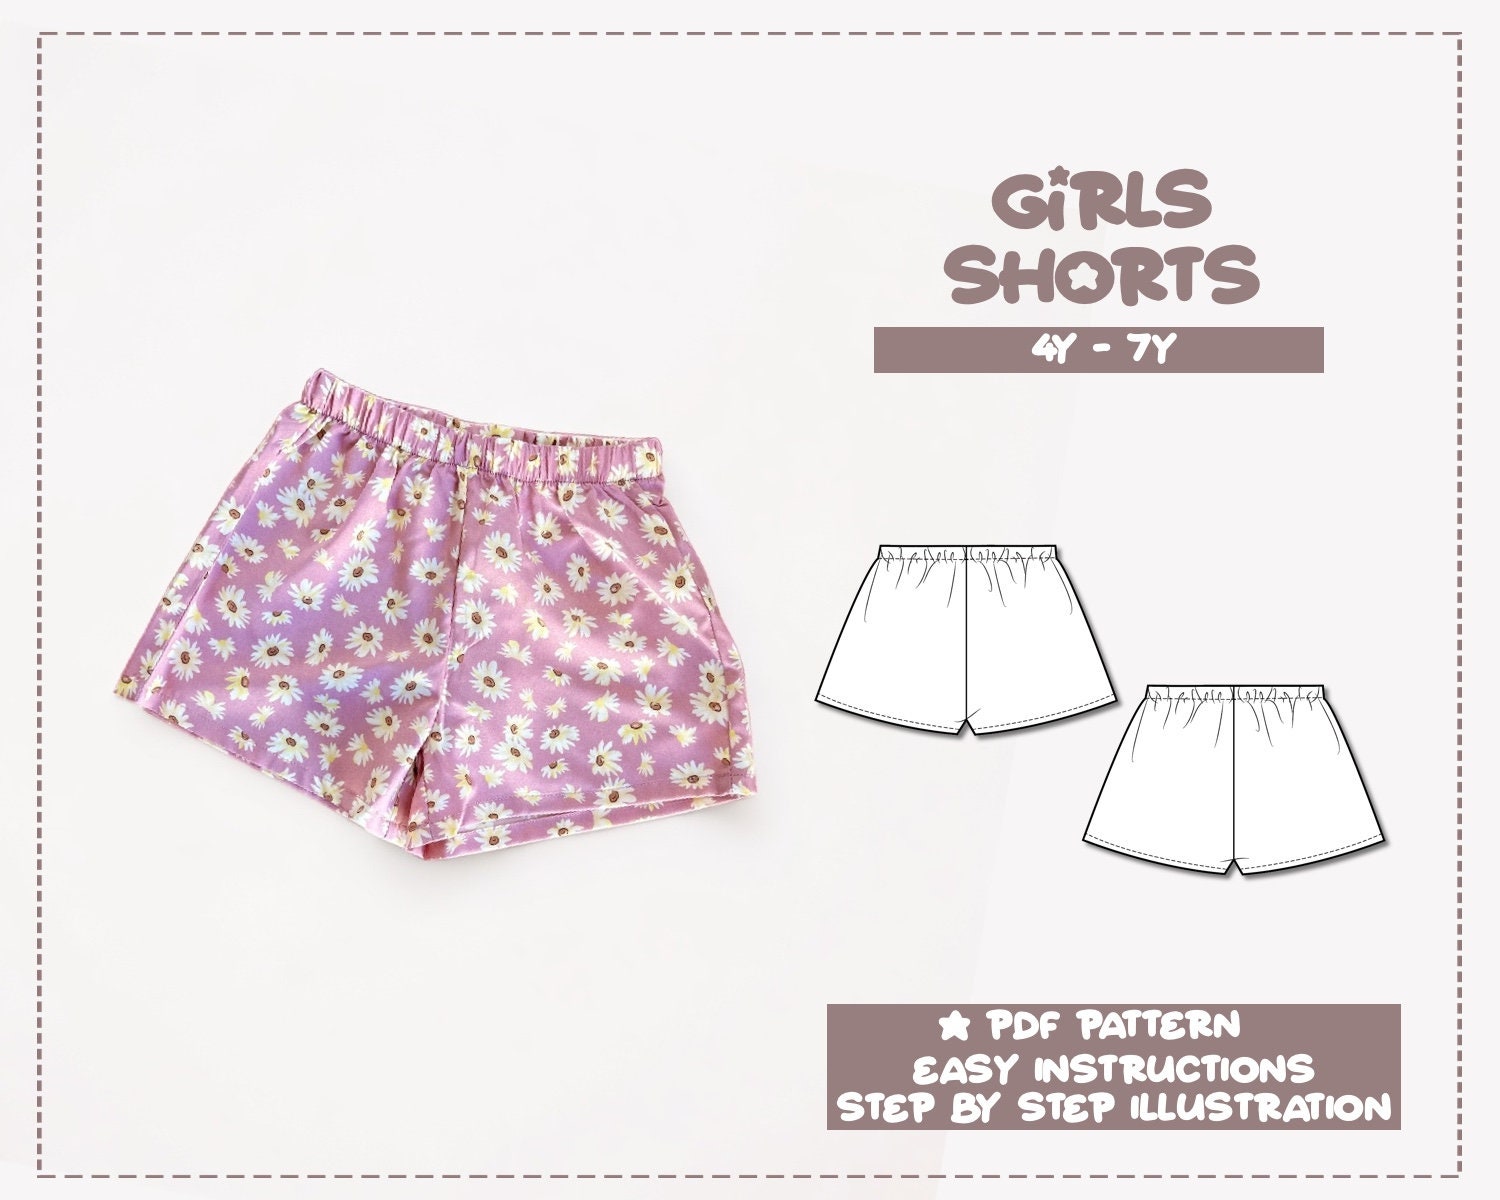 Little Girls Shorts 